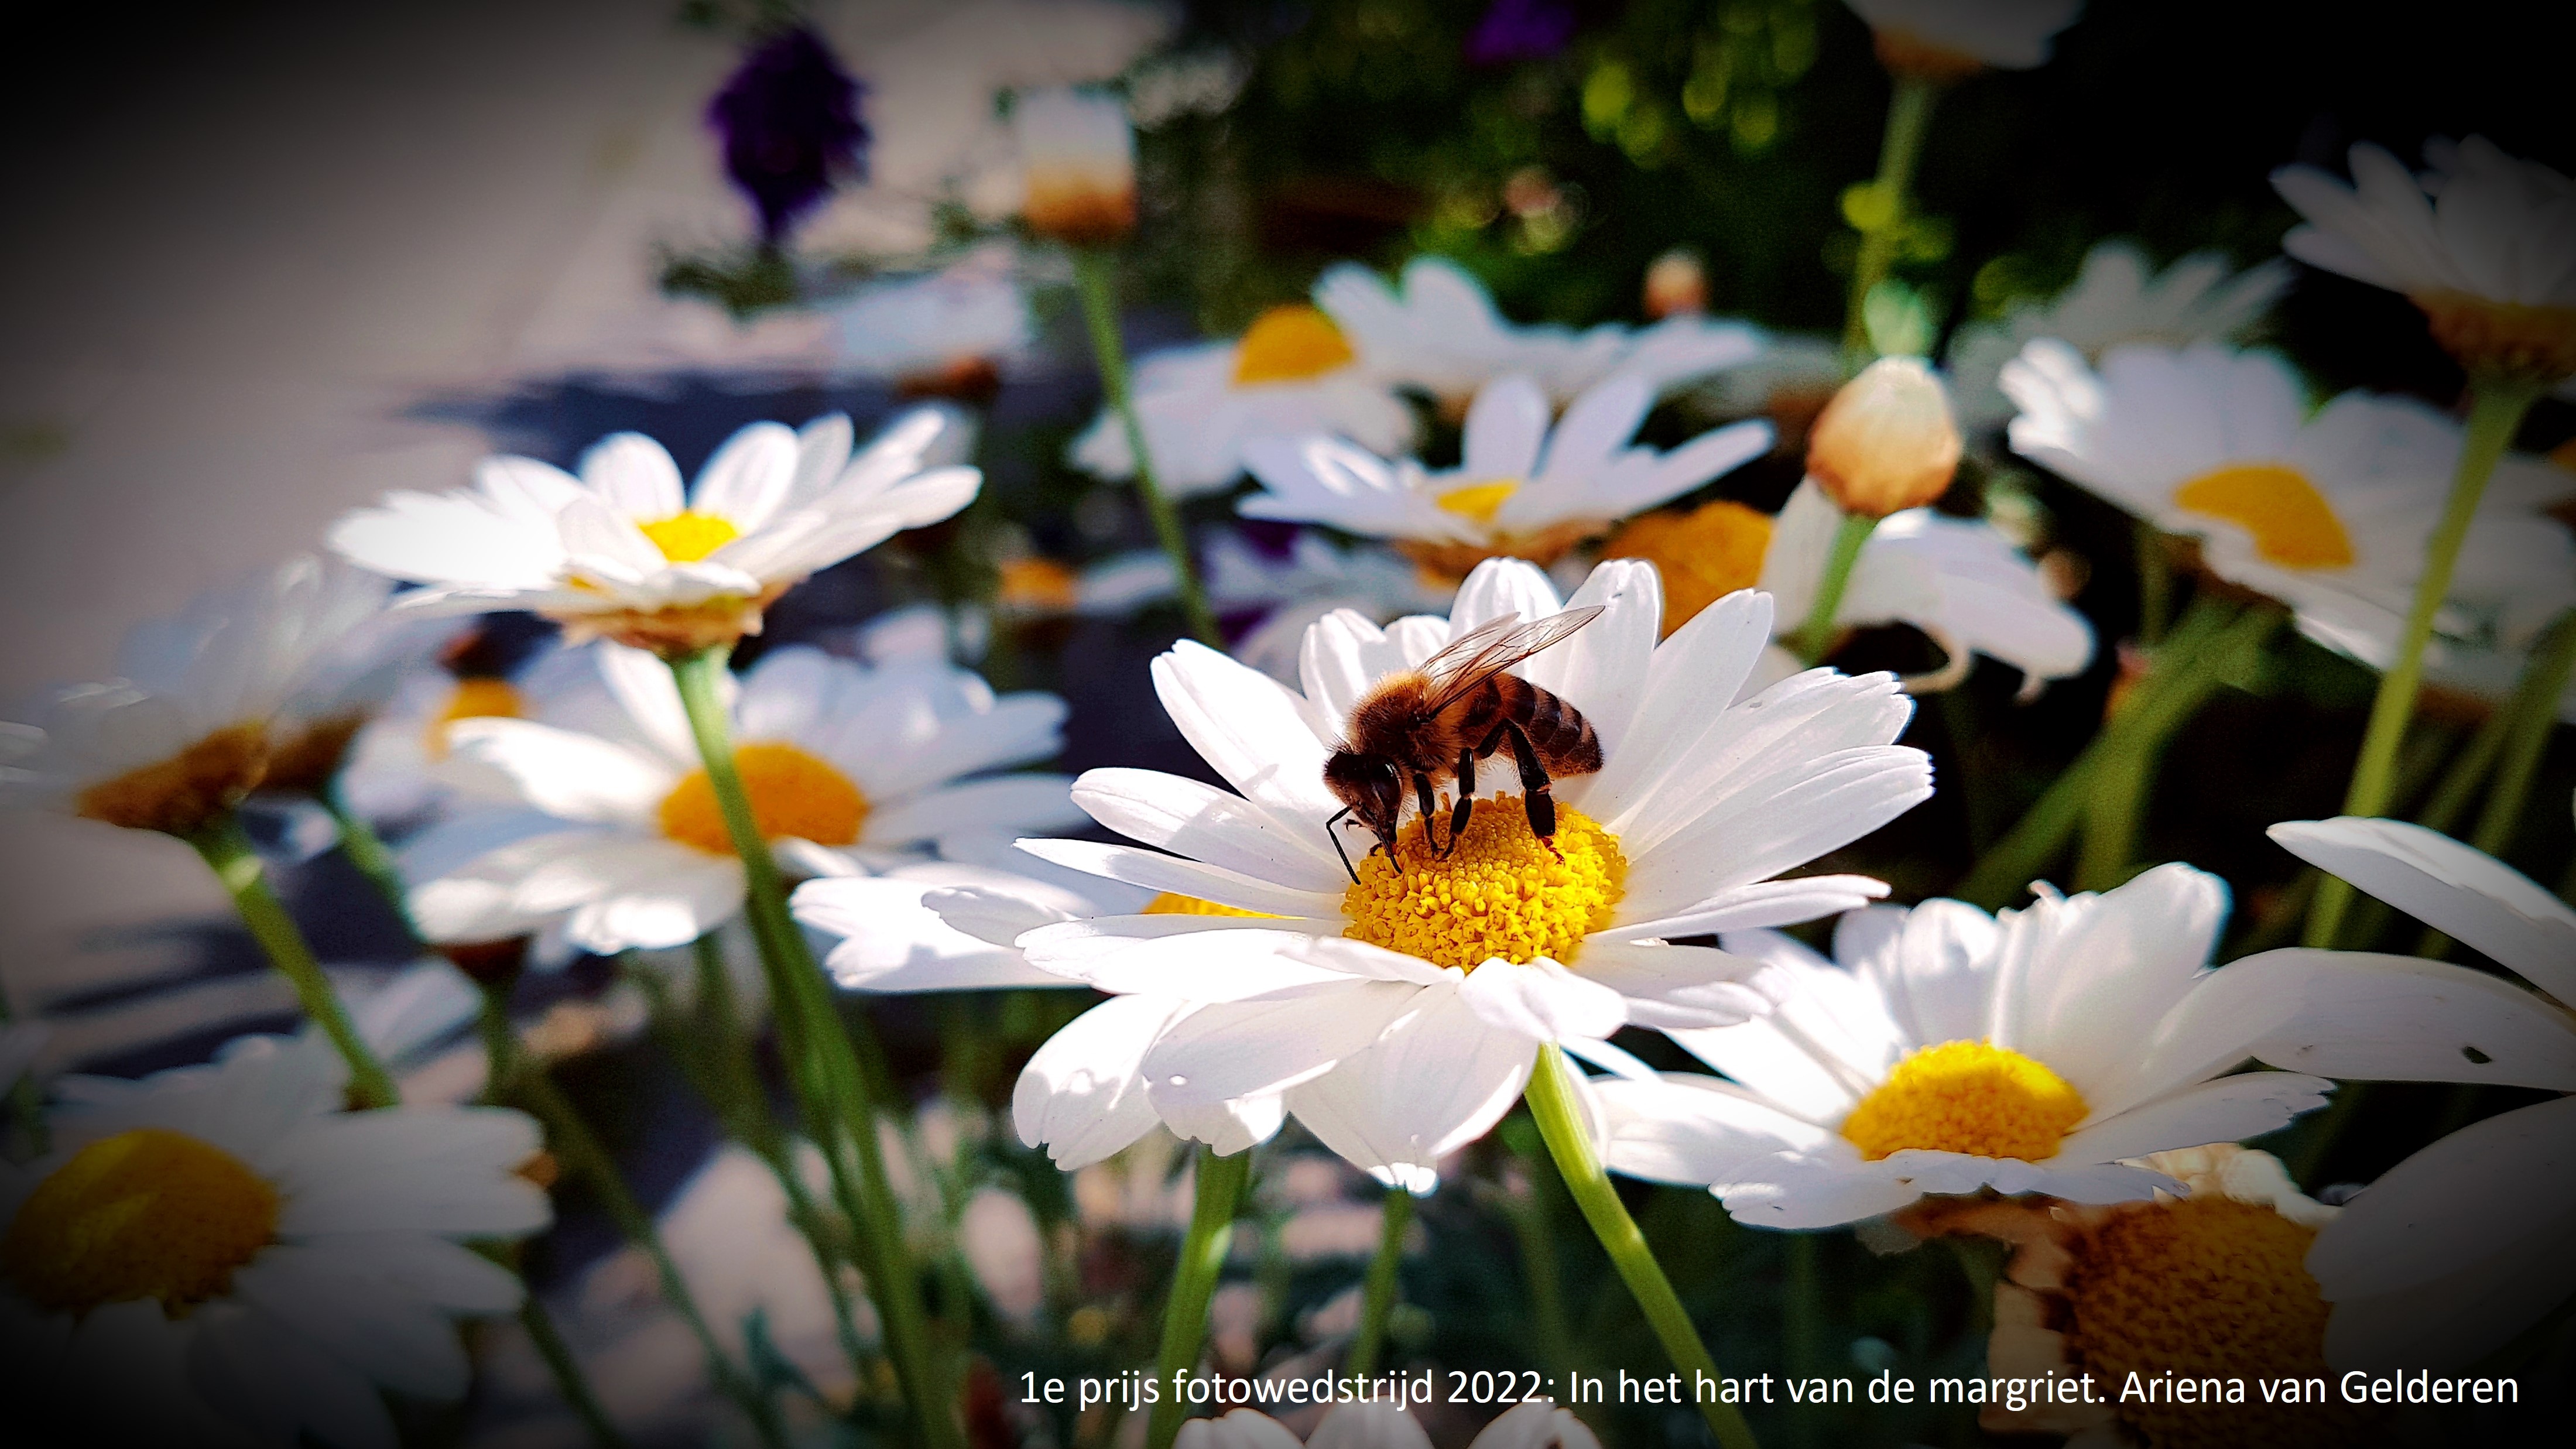 Winnaars fotowedstijd Groene Cirkel Bijenlandschap bekend